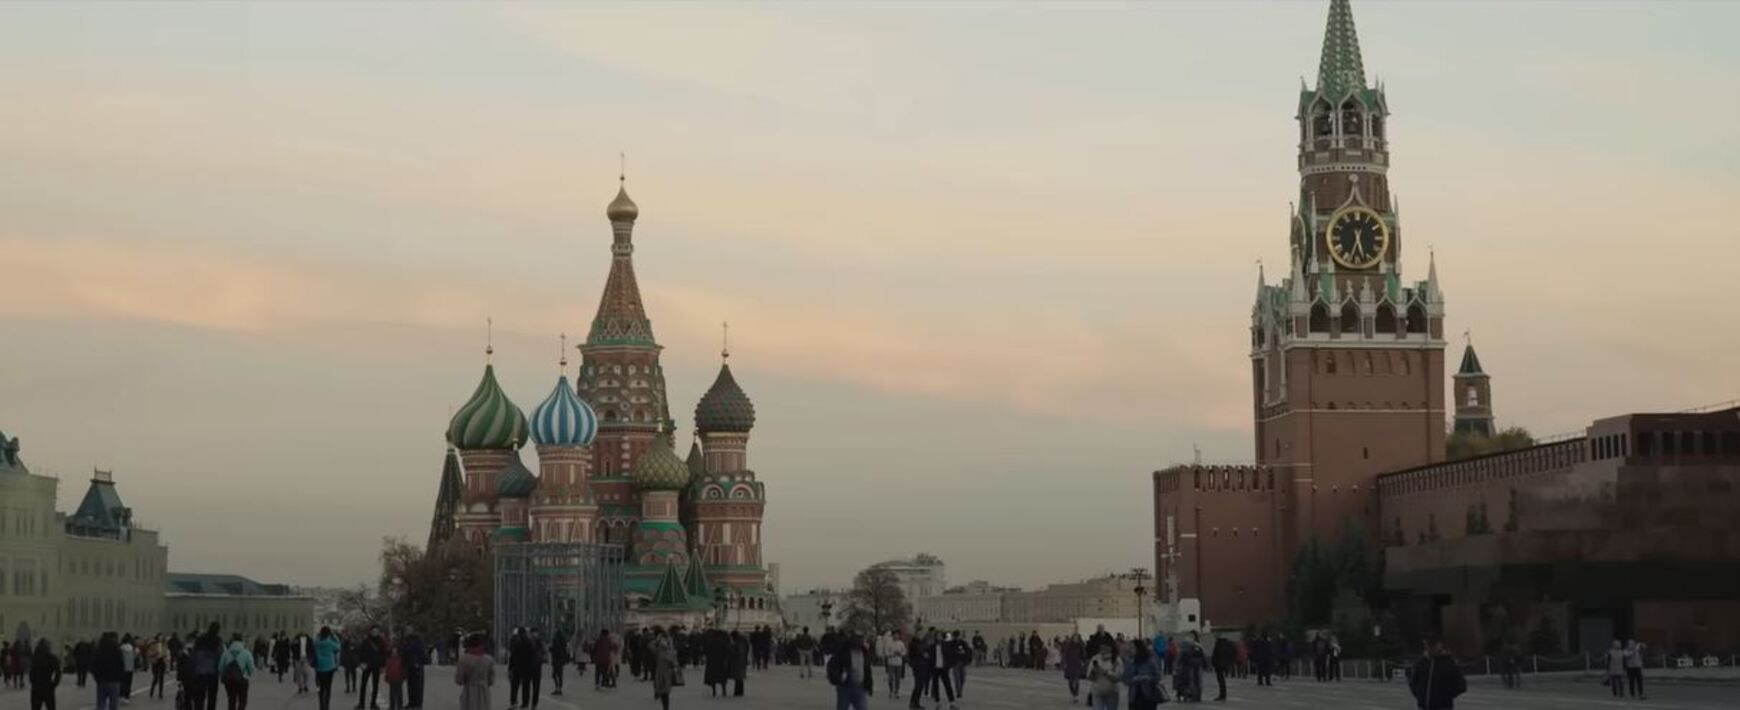 Тайное вторжение сериал 2023 – дата премьеры, трейлер со взрывами в Москве, актеры - Кино